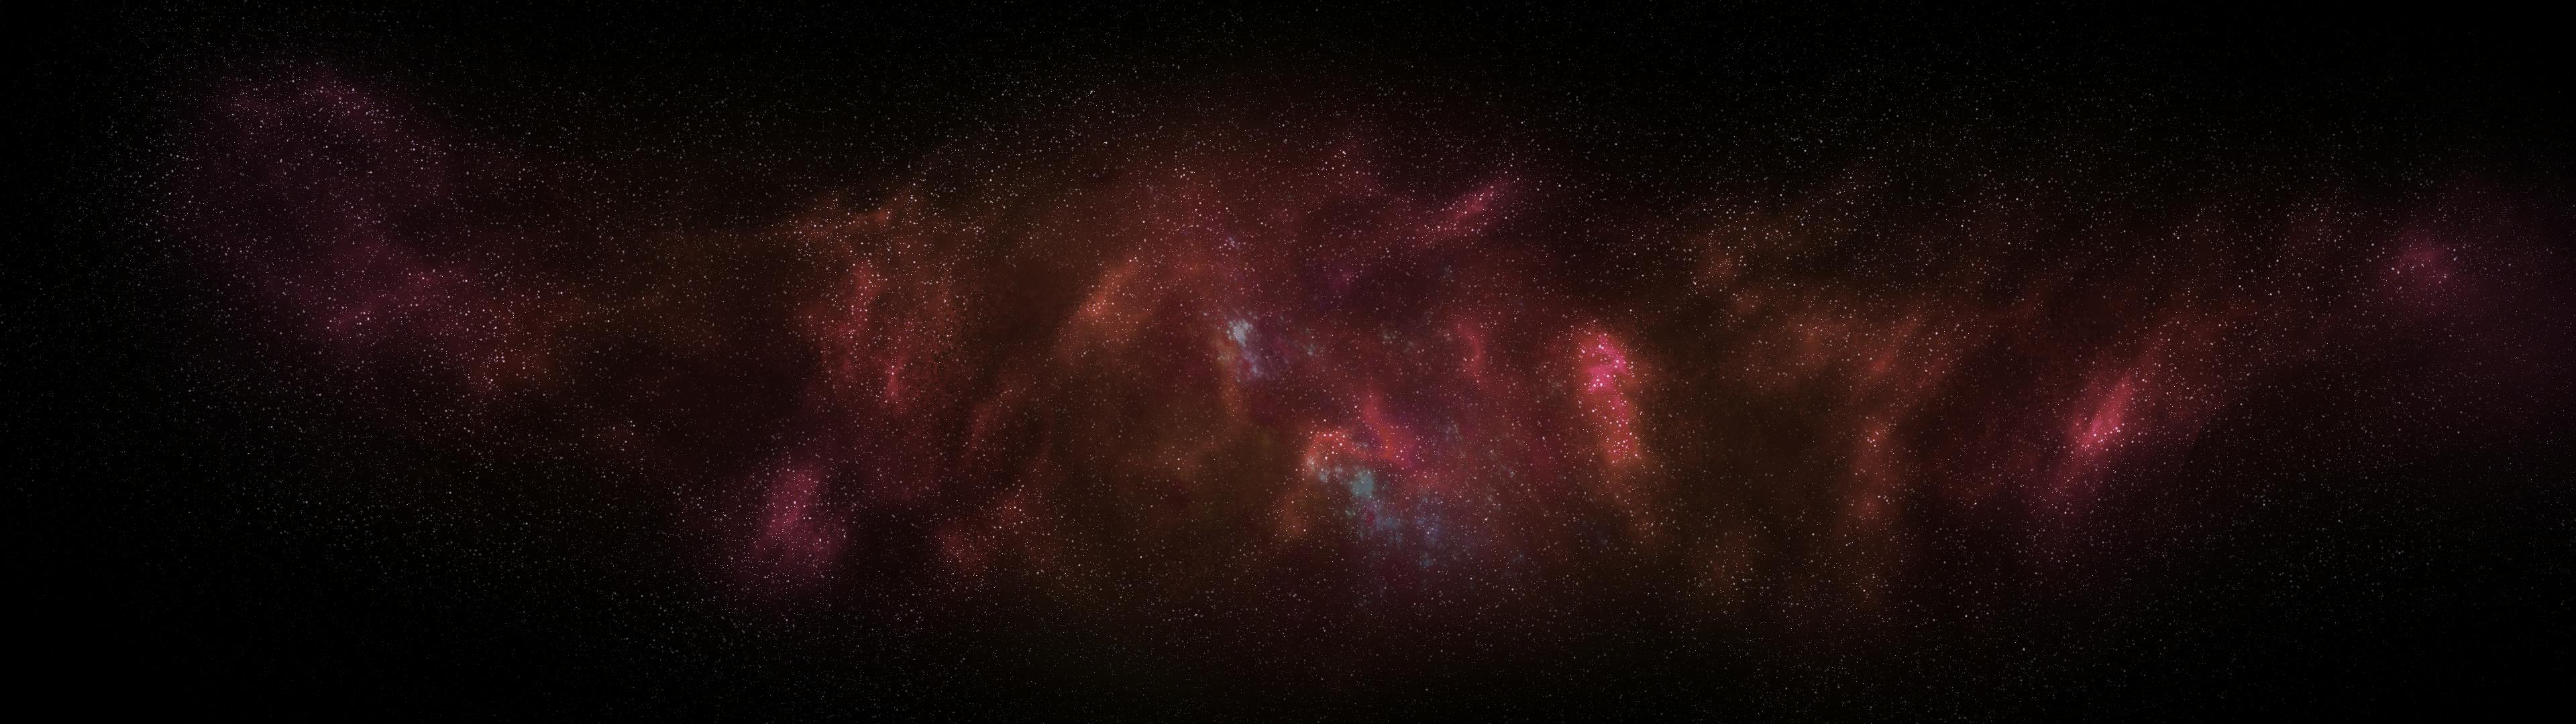 3840 1080 銀河 銀河の壁紙の無料の写真素材